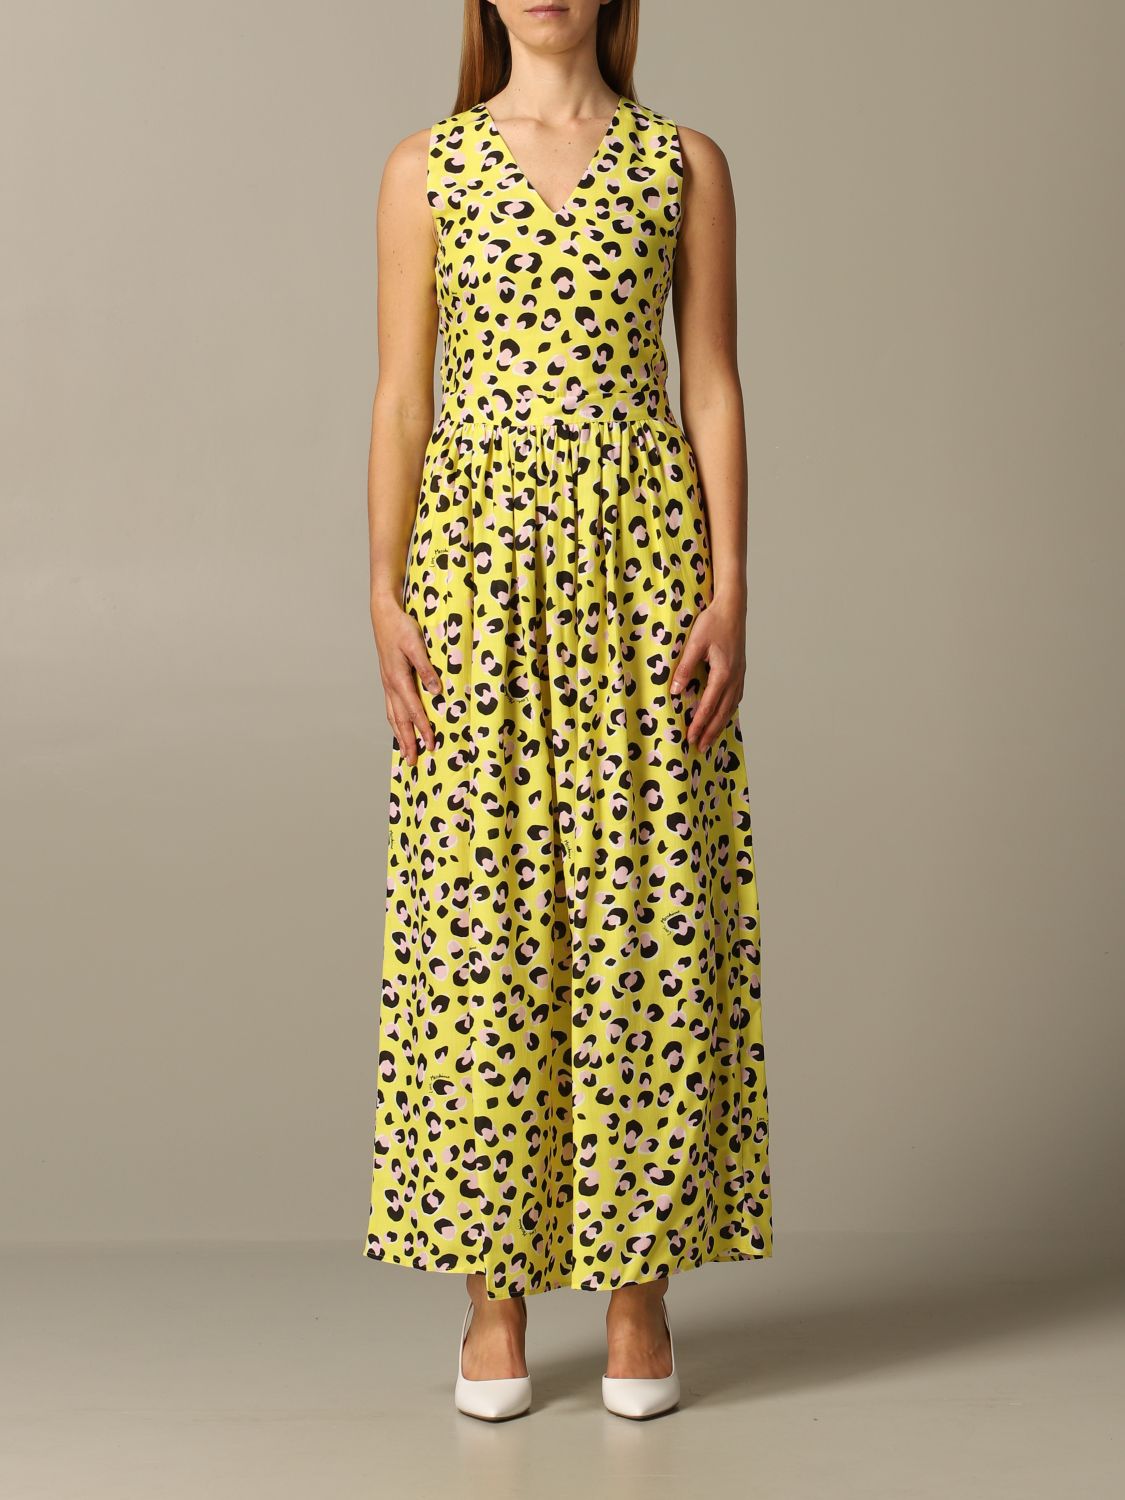 LOVE MOSCHINO: animal print dress - Yellow | Love Moschino dress ...